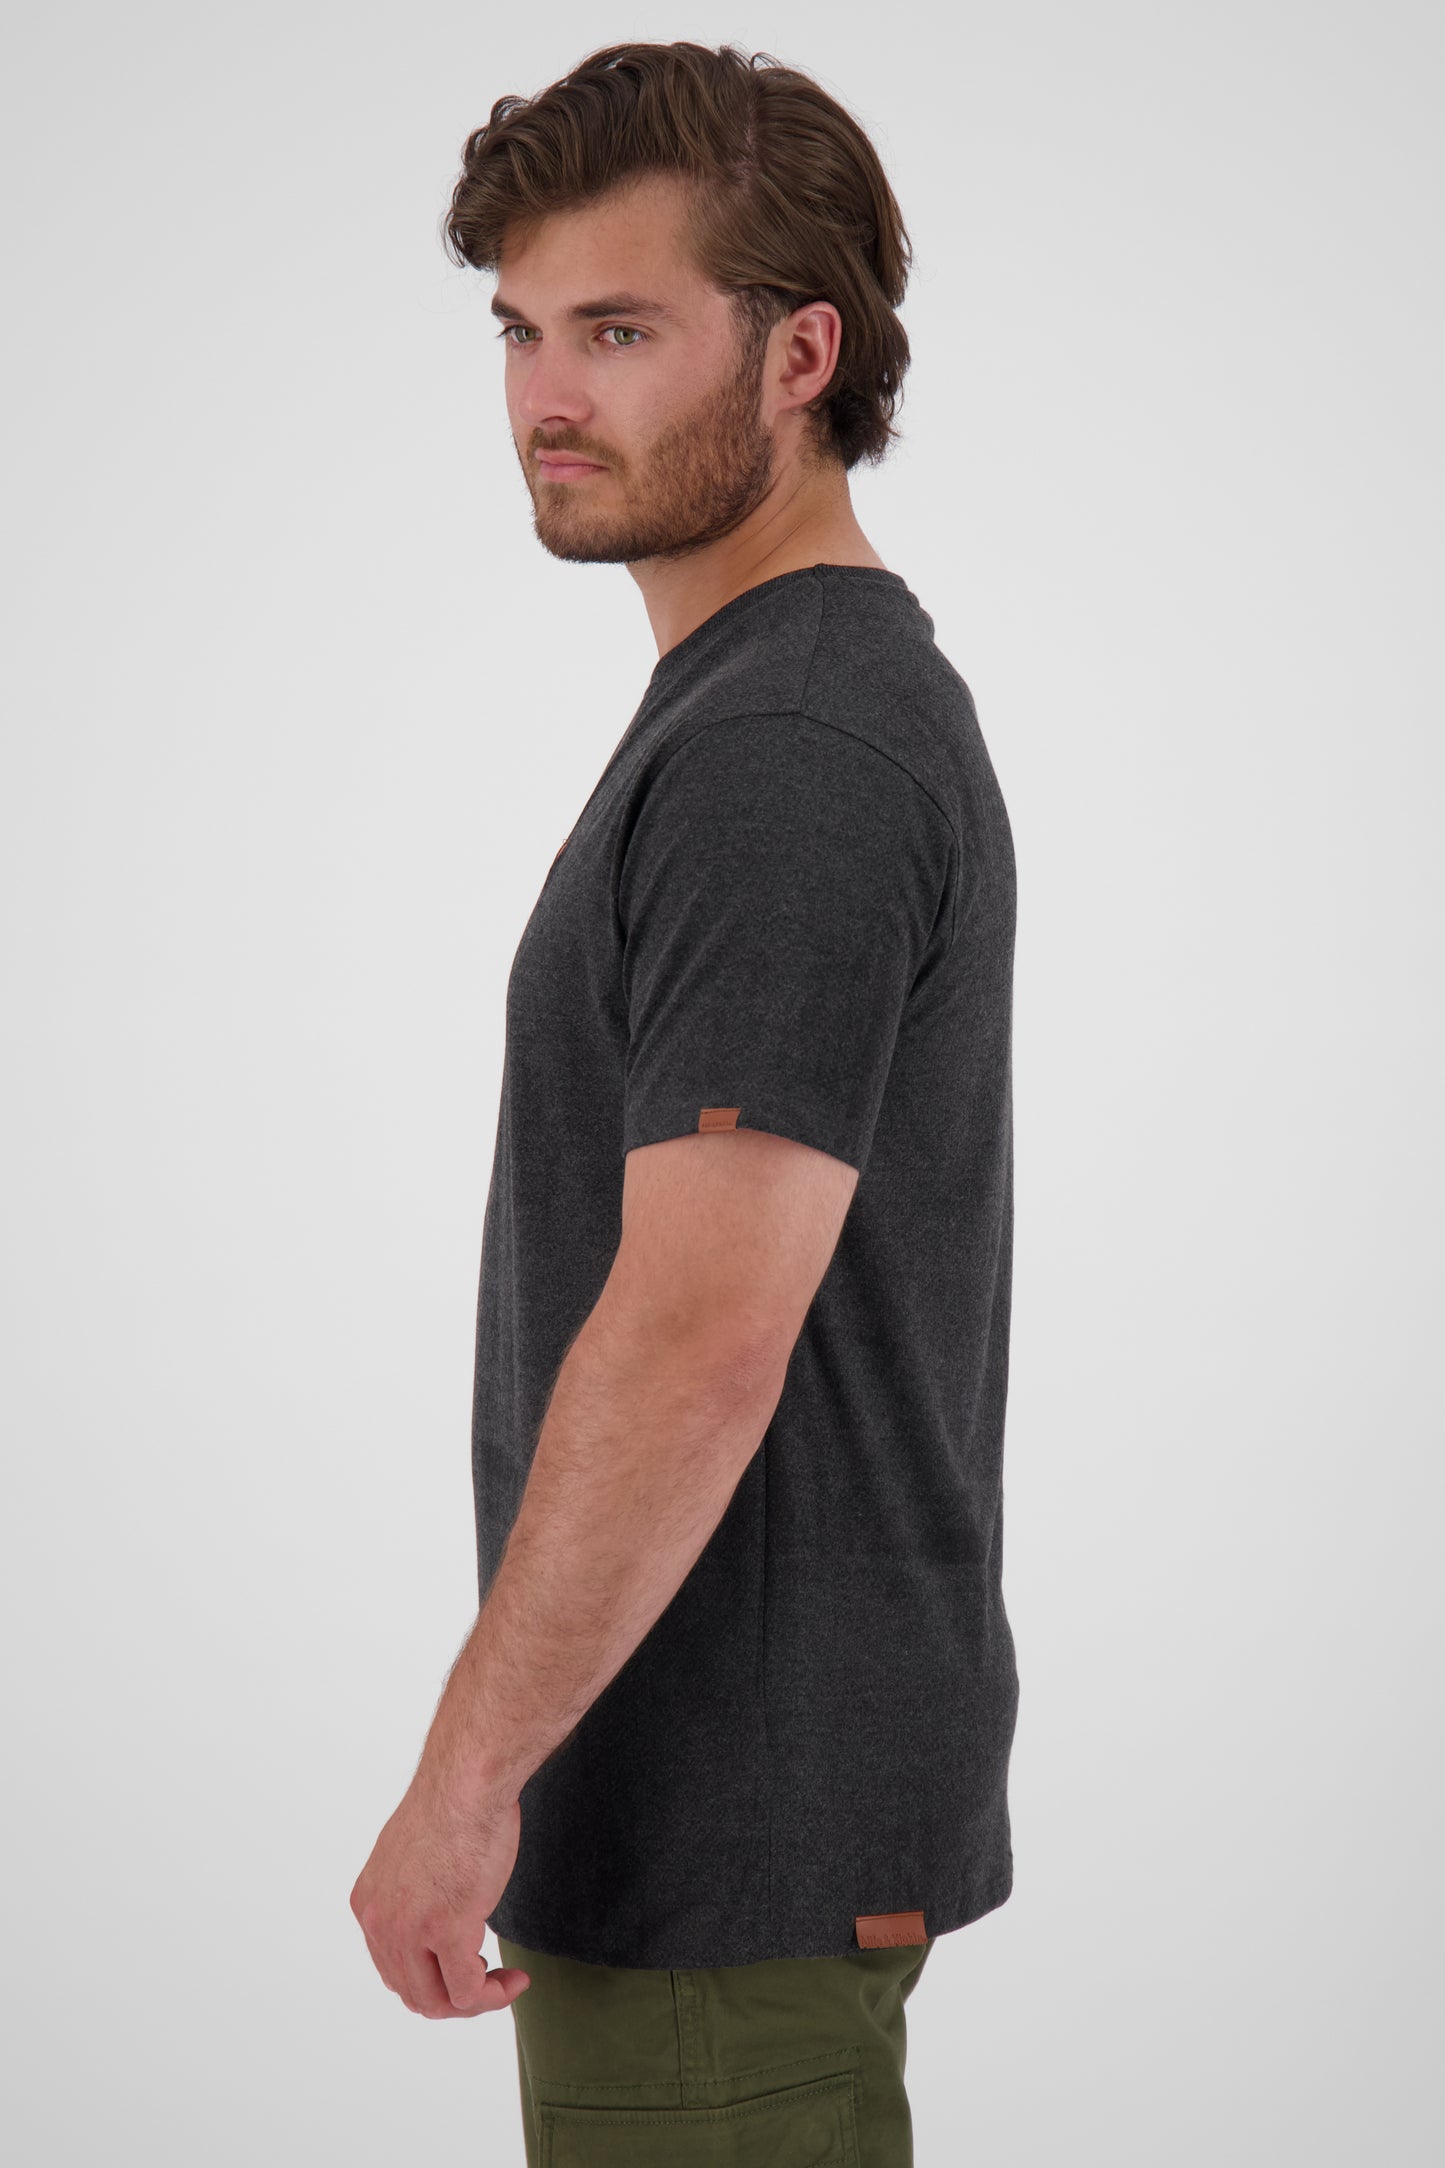 Alloverprint-Design für Männer mit dem T-Shirt NicAK B Schwarz